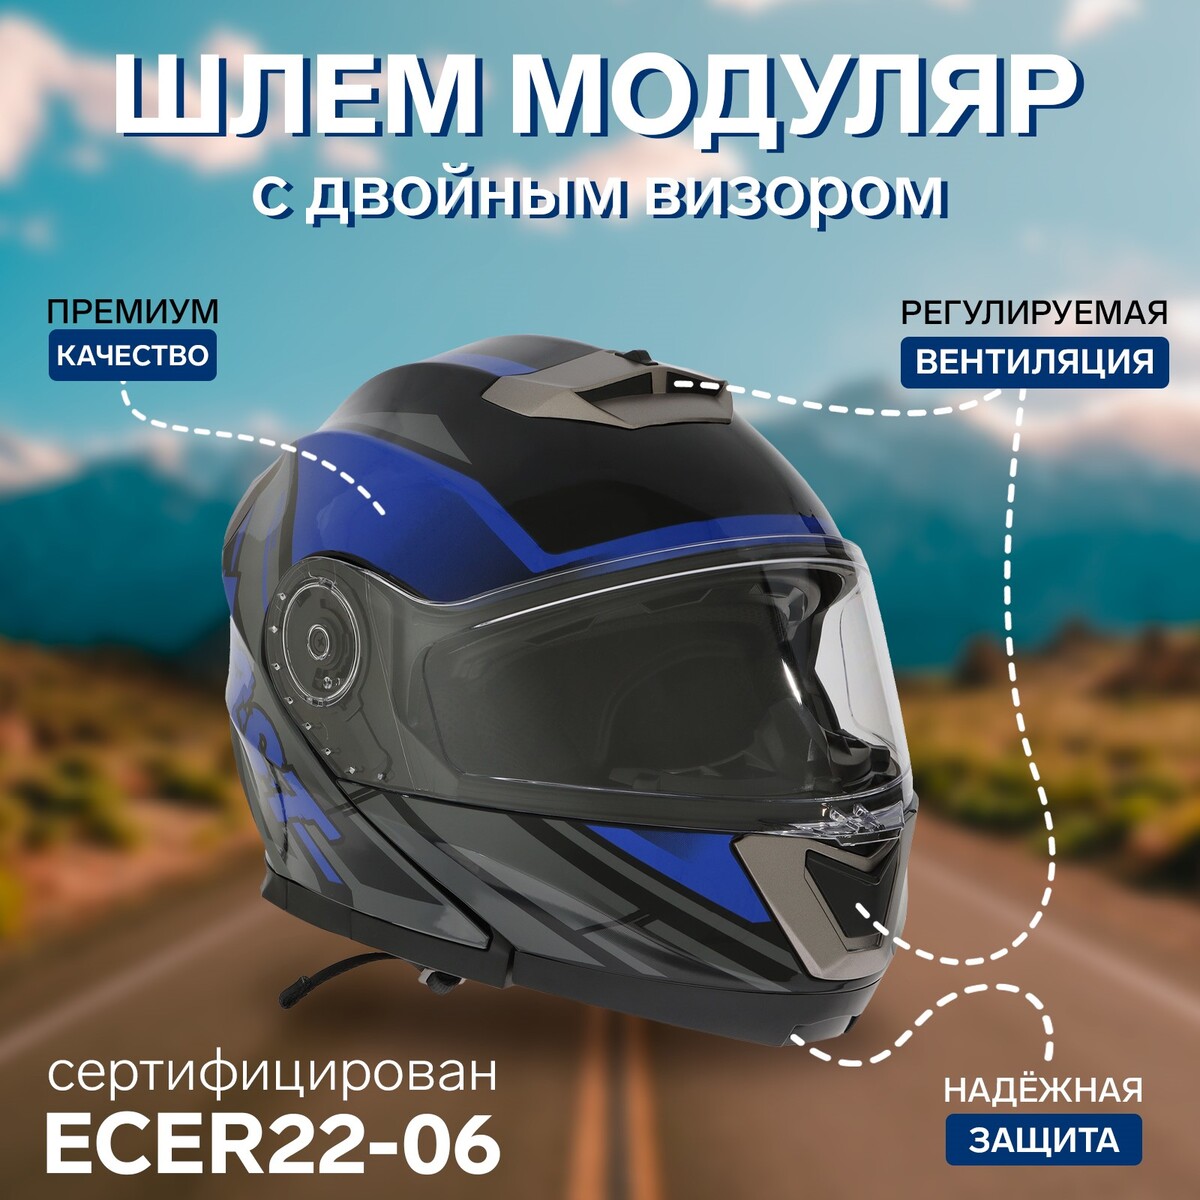 Шлем модуляр с двумя визорами, размер m (57-58), модель - bld-160e, черно-синий